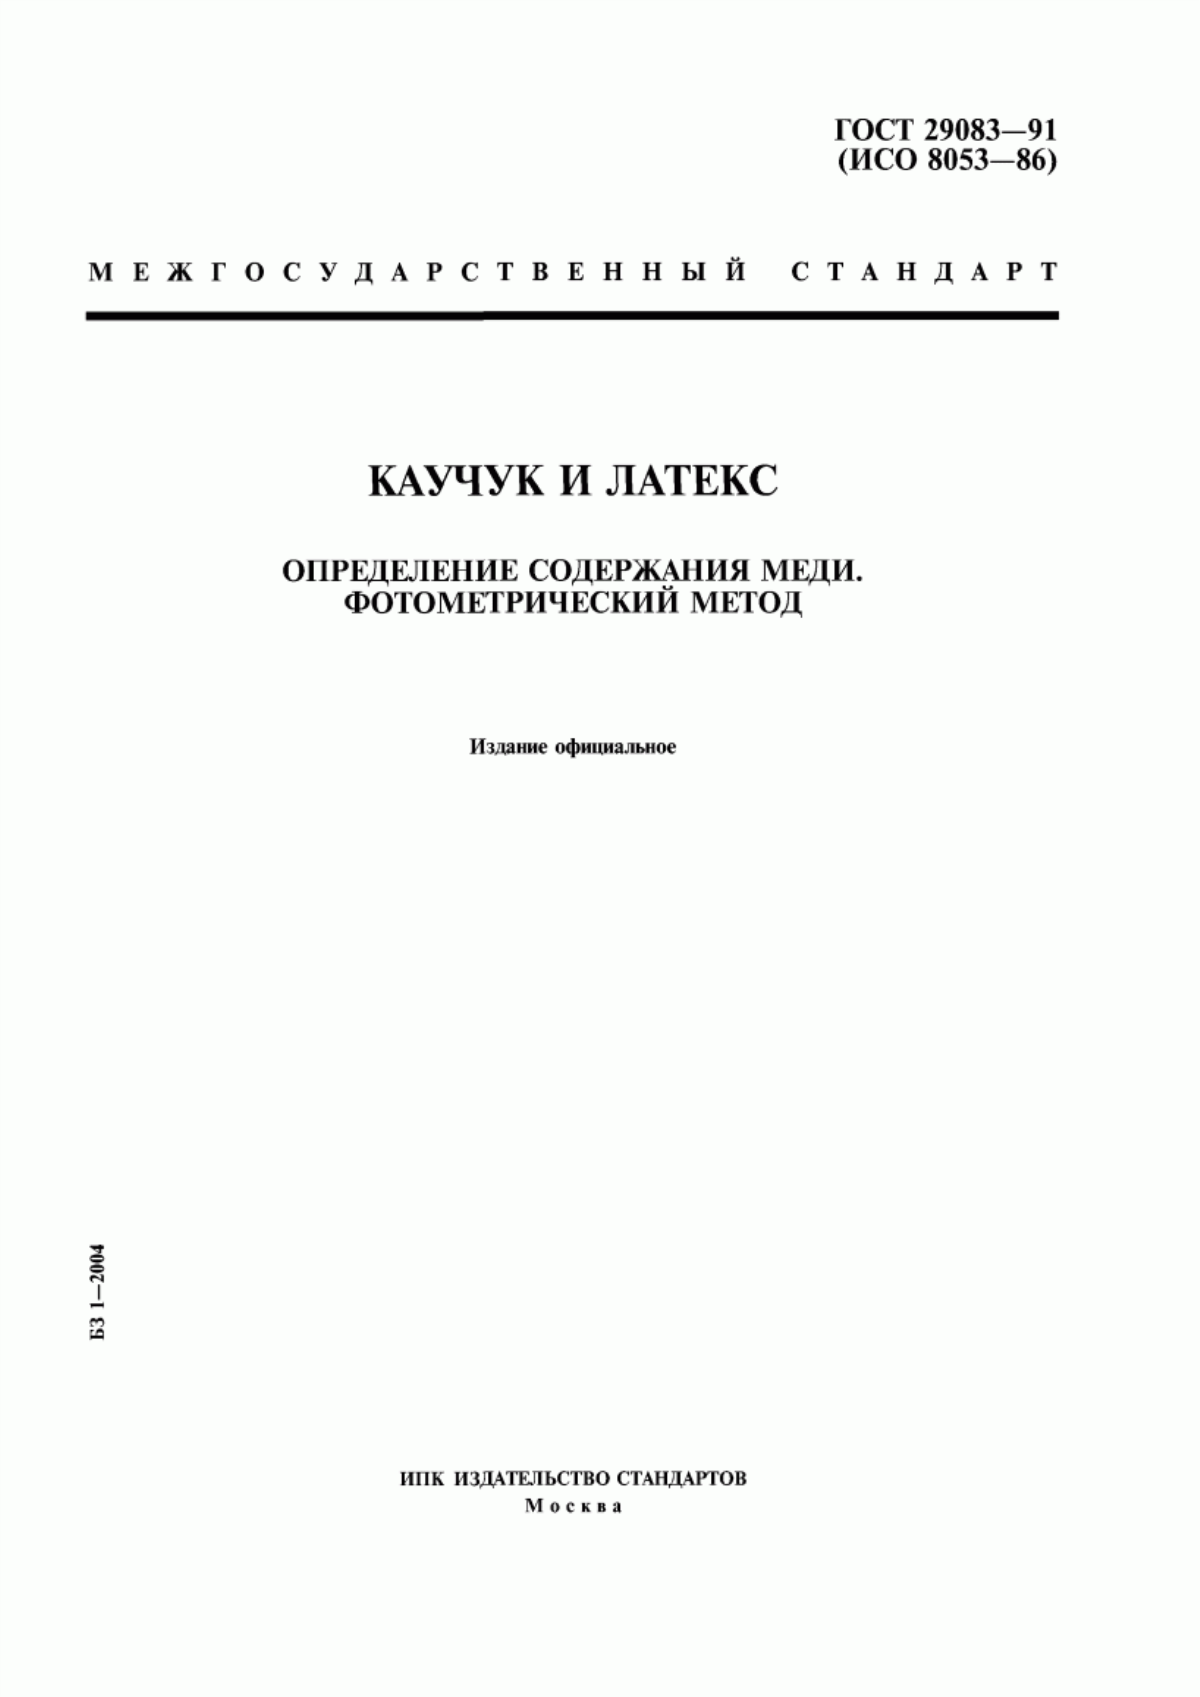 ГОСТ 29083-91 Каучук и латекс. Определение содержания меди. Фотометрический метод